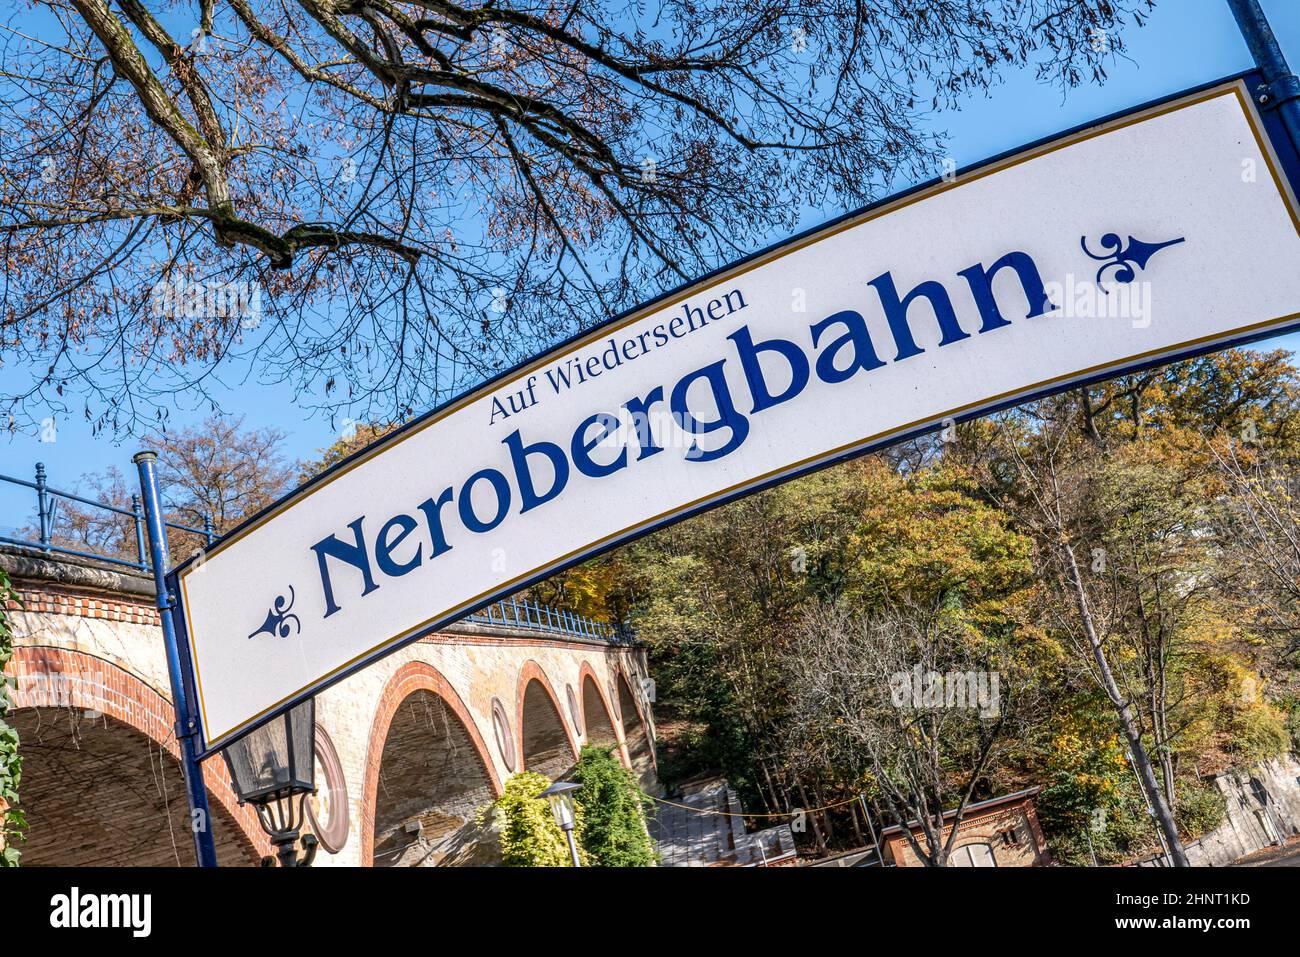 Signalisation Auf wiedersehen Nerobergbahn (au revoir Nero train de montagne) dans le parc Nero à Wiesbaden Banque D'Images